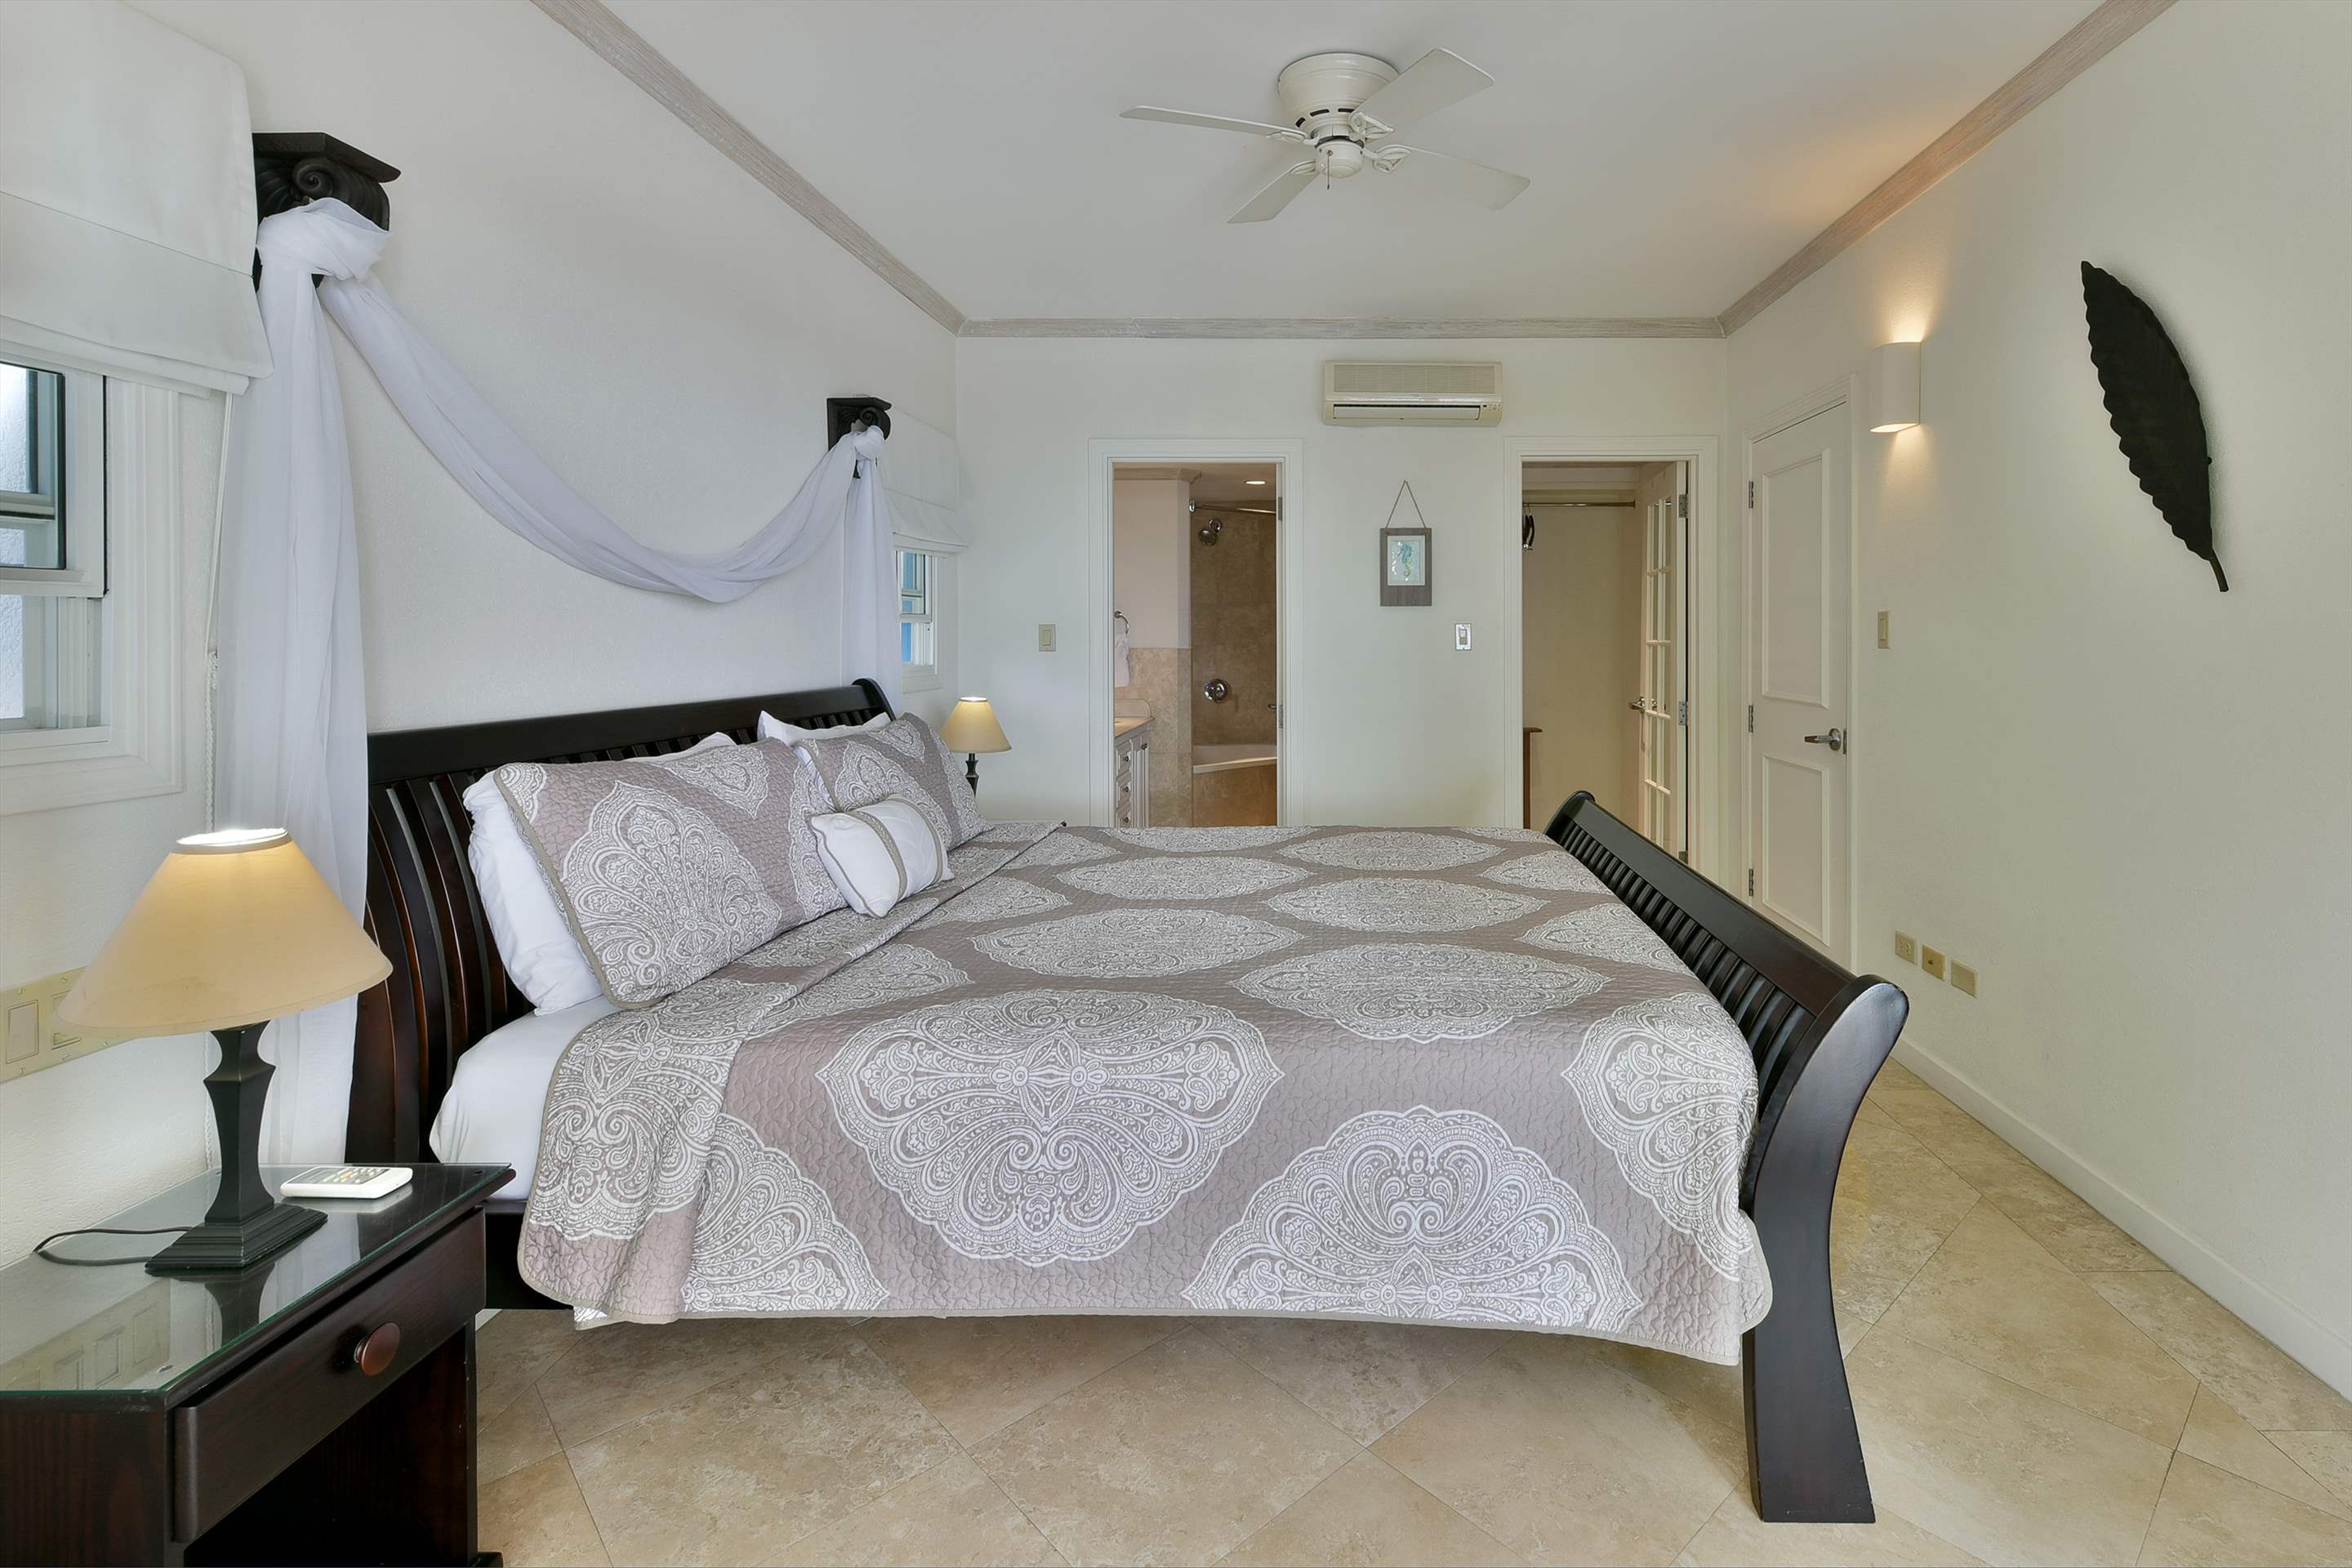 Maxwell Beach Villas 101, 2 bedroom, 2 bedroom apartment in St. Lawrence Gap & South Coast, Barbados Photo #13